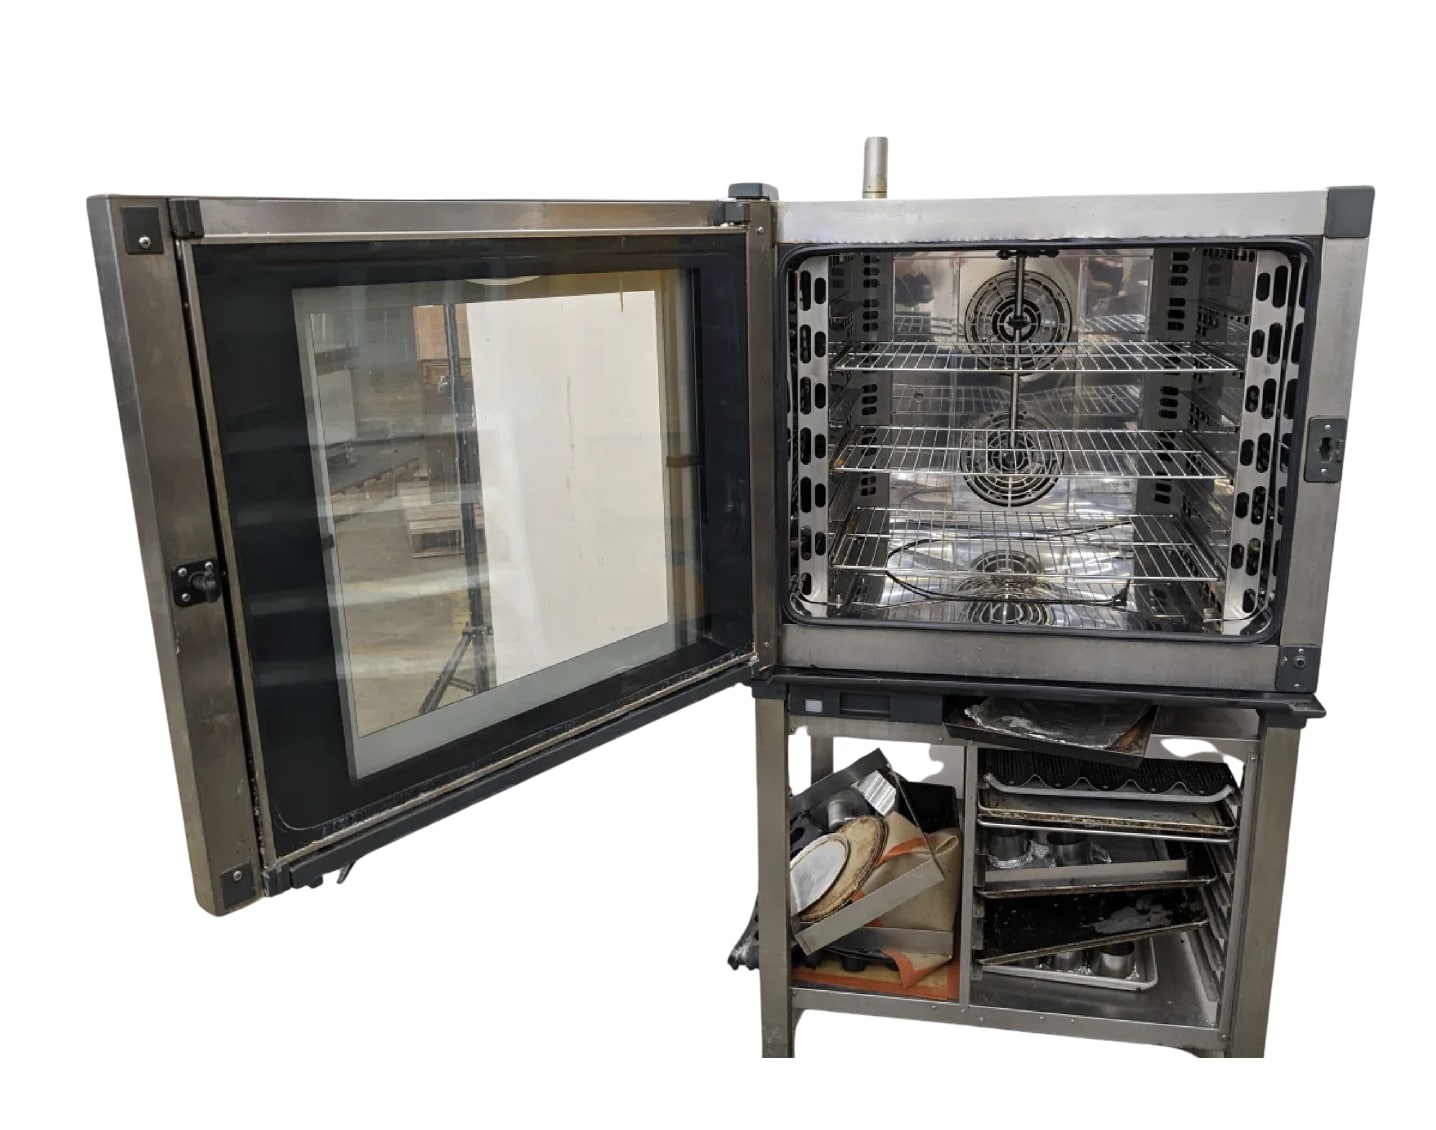  UNOX COMBI OVEN XEBC-06EU-EPR - inside oven